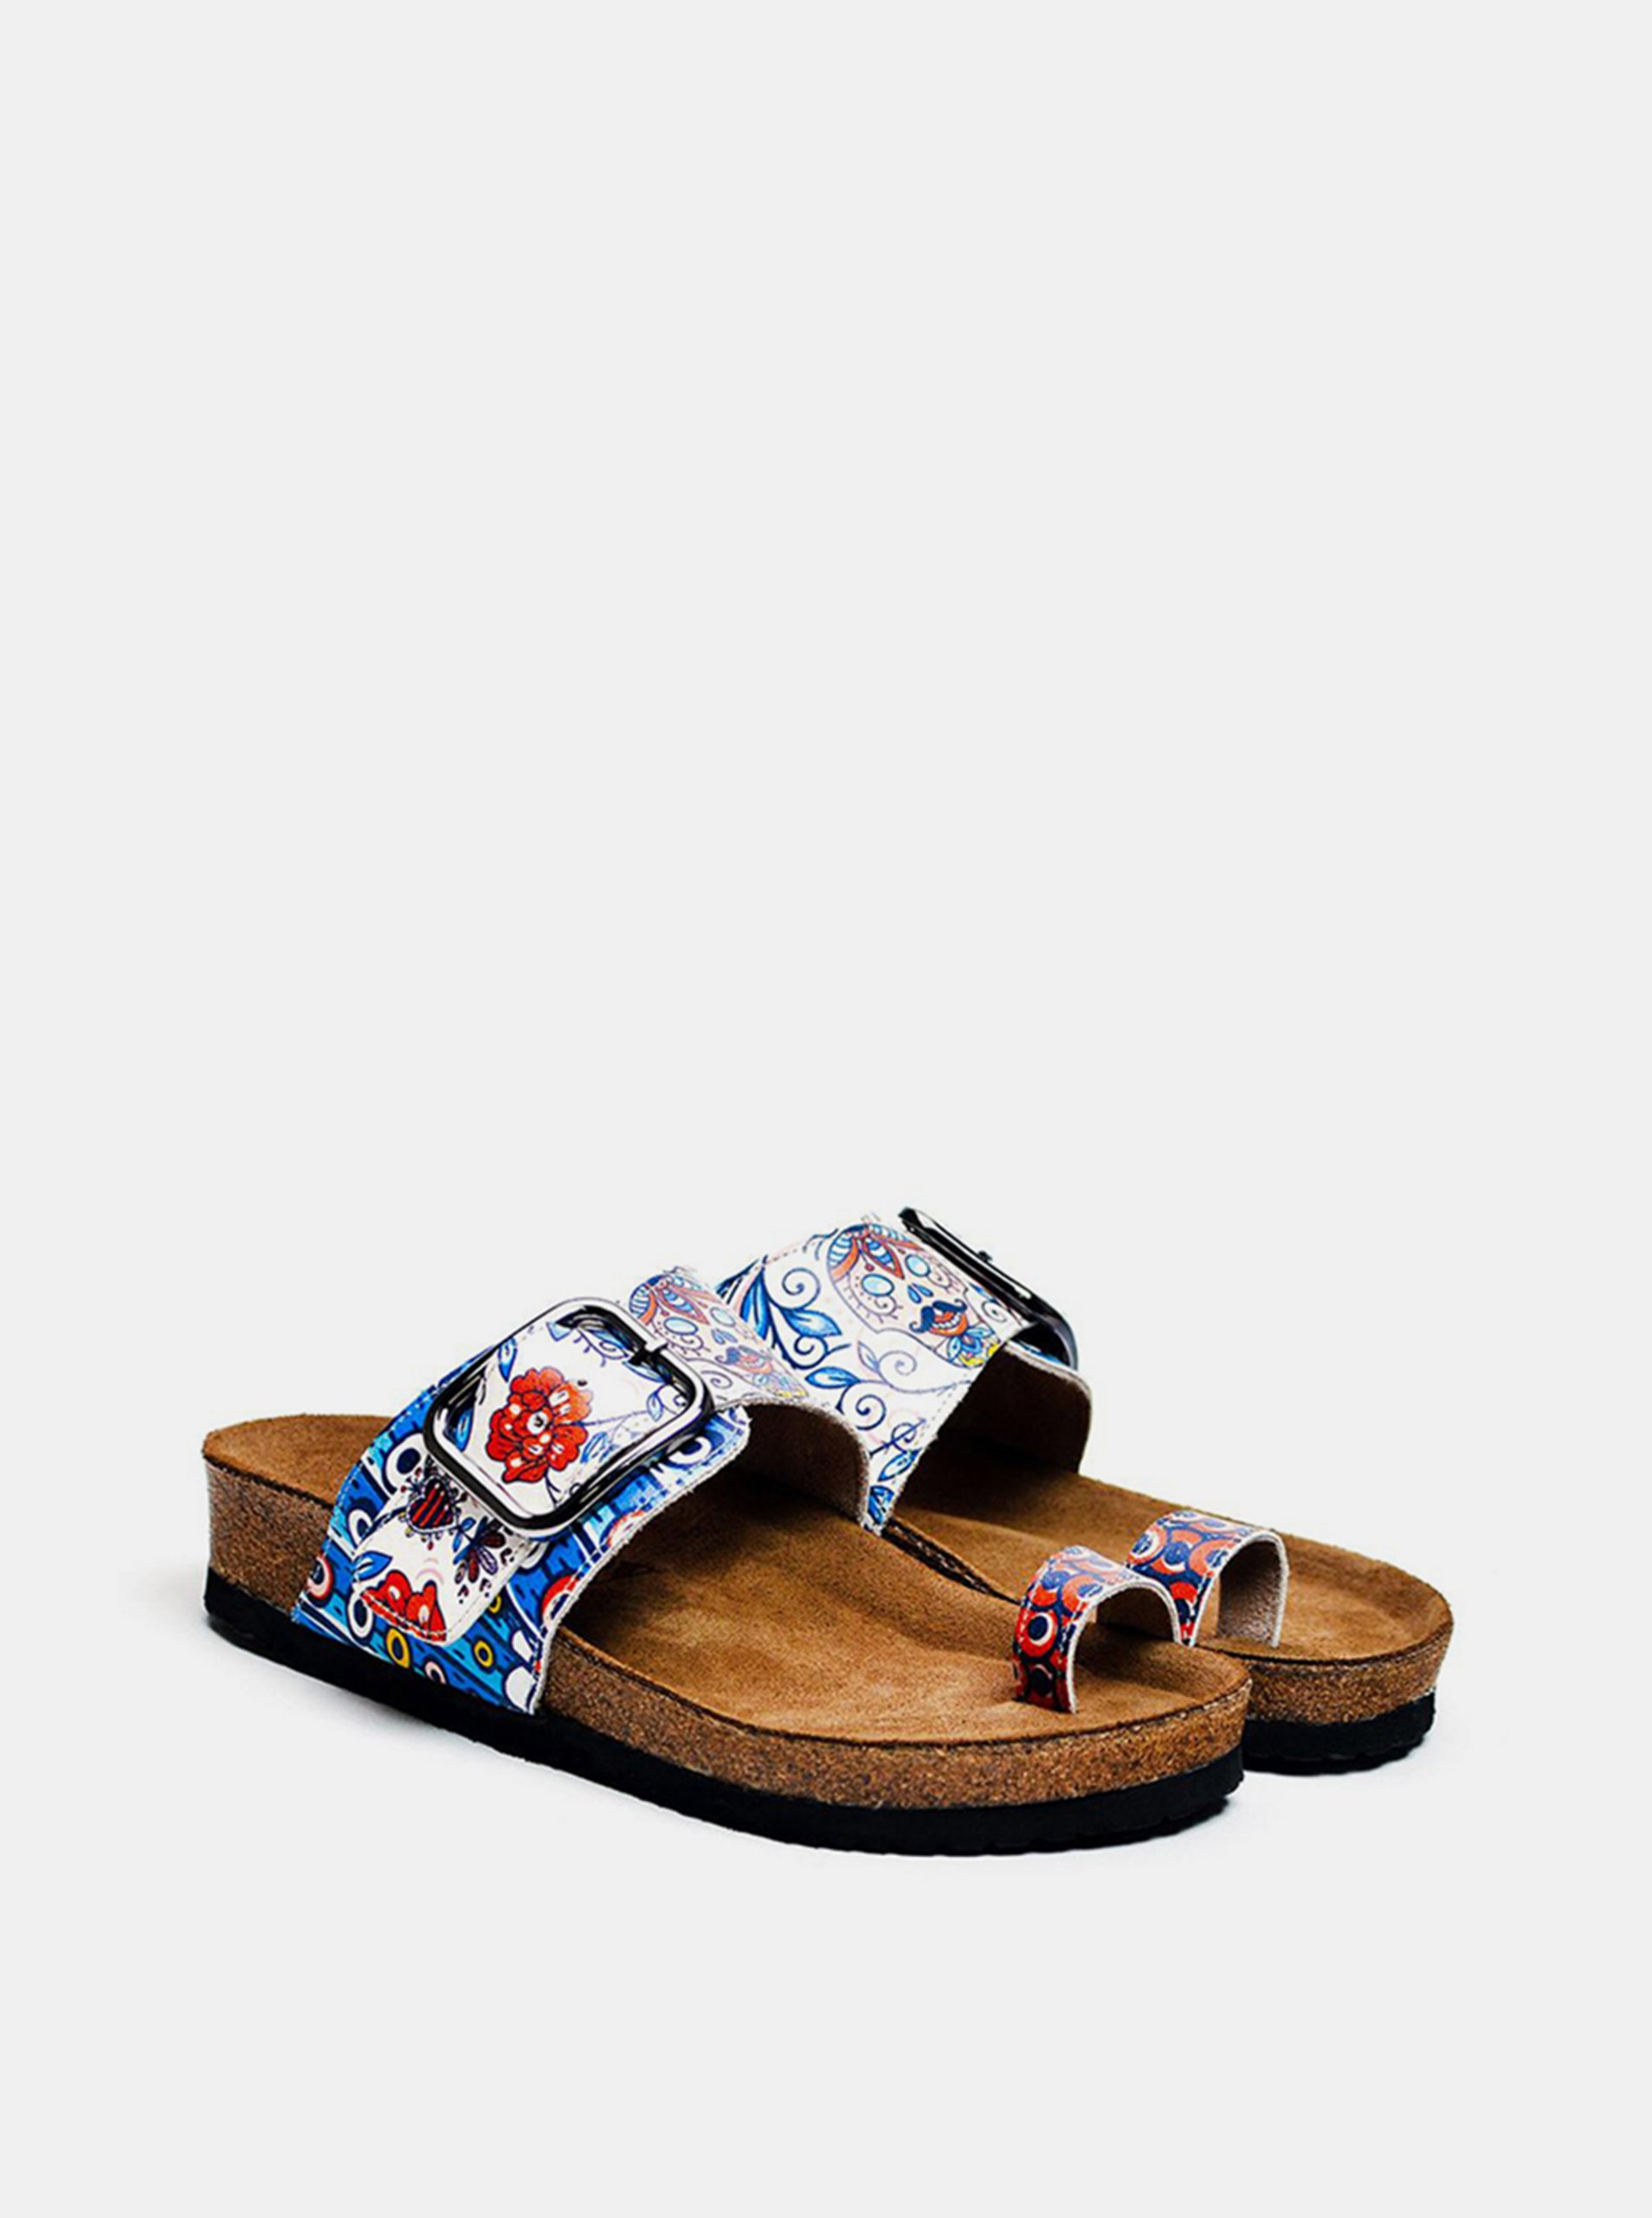 E-shop Calceo modré pantofle Thong Sandals Blue Dream